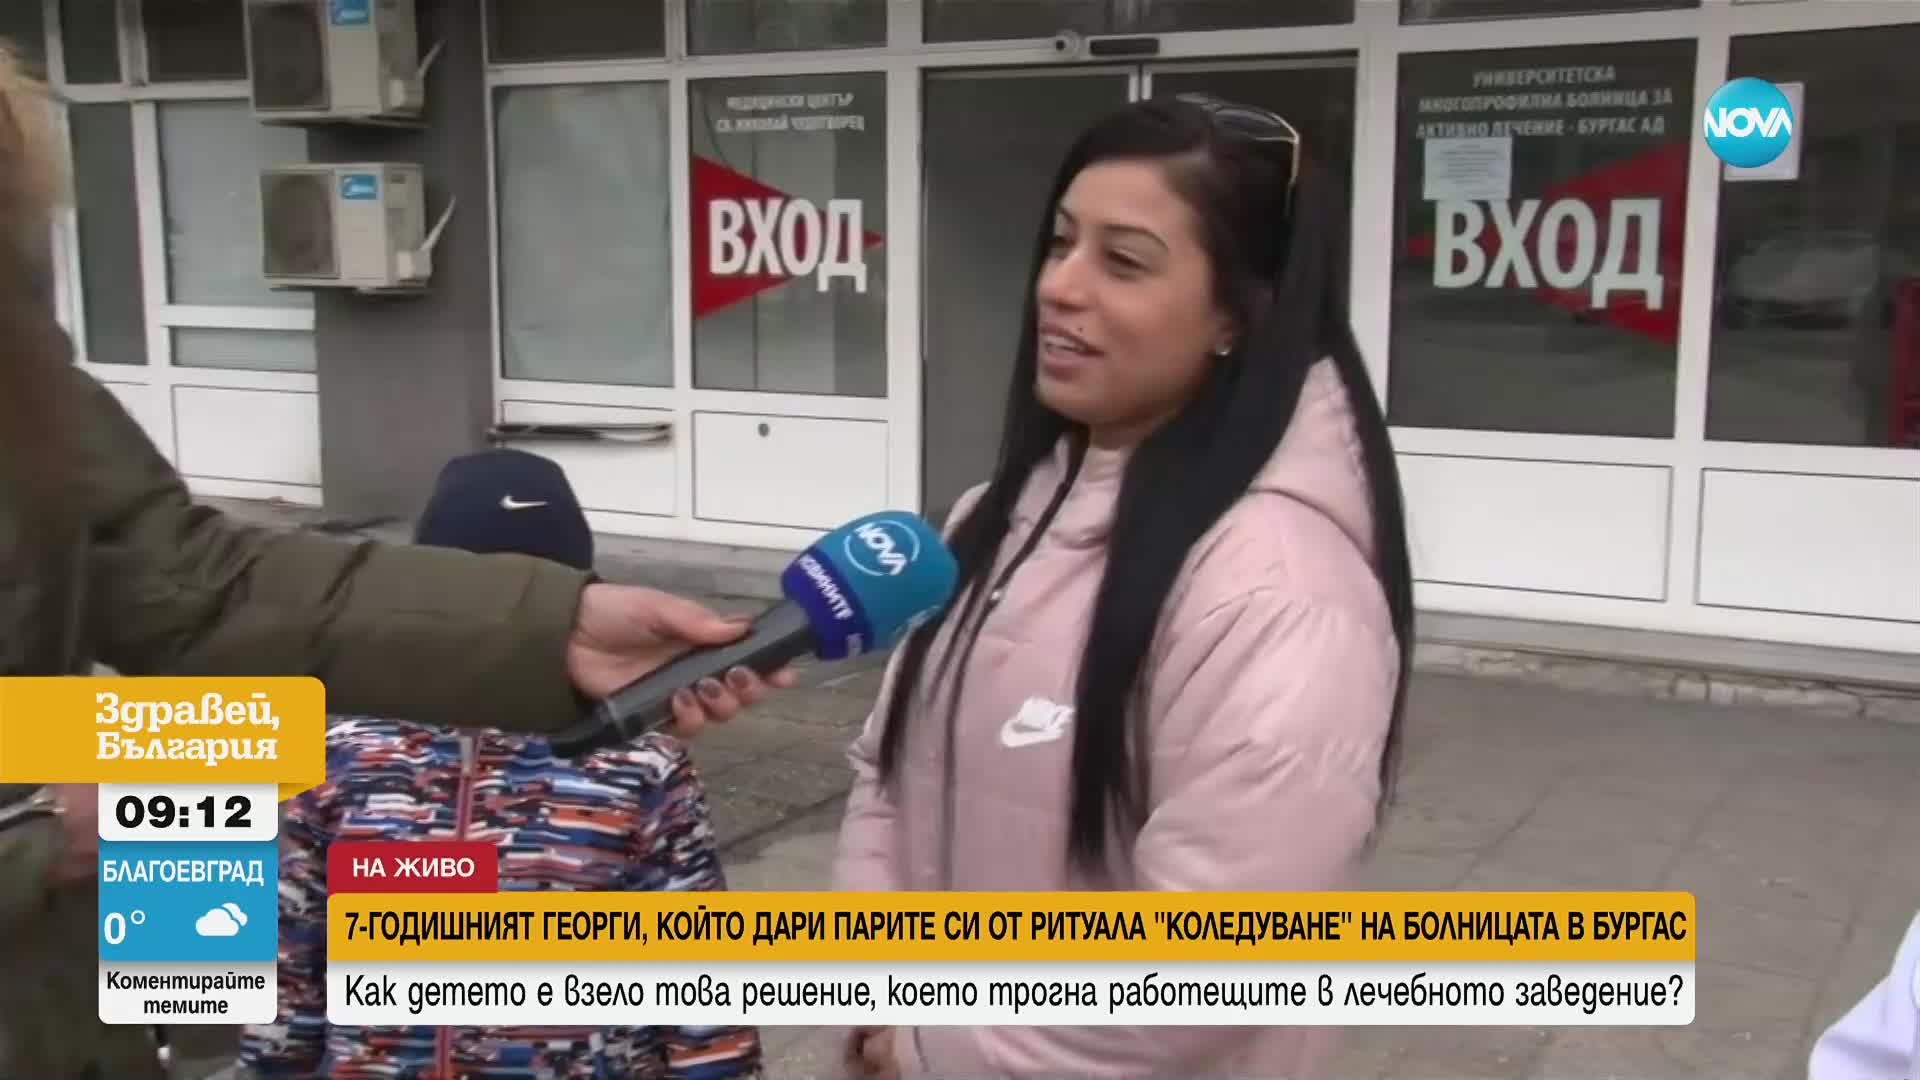 7-годишният Гого дари парите си от коледуване на болницата в Бургас